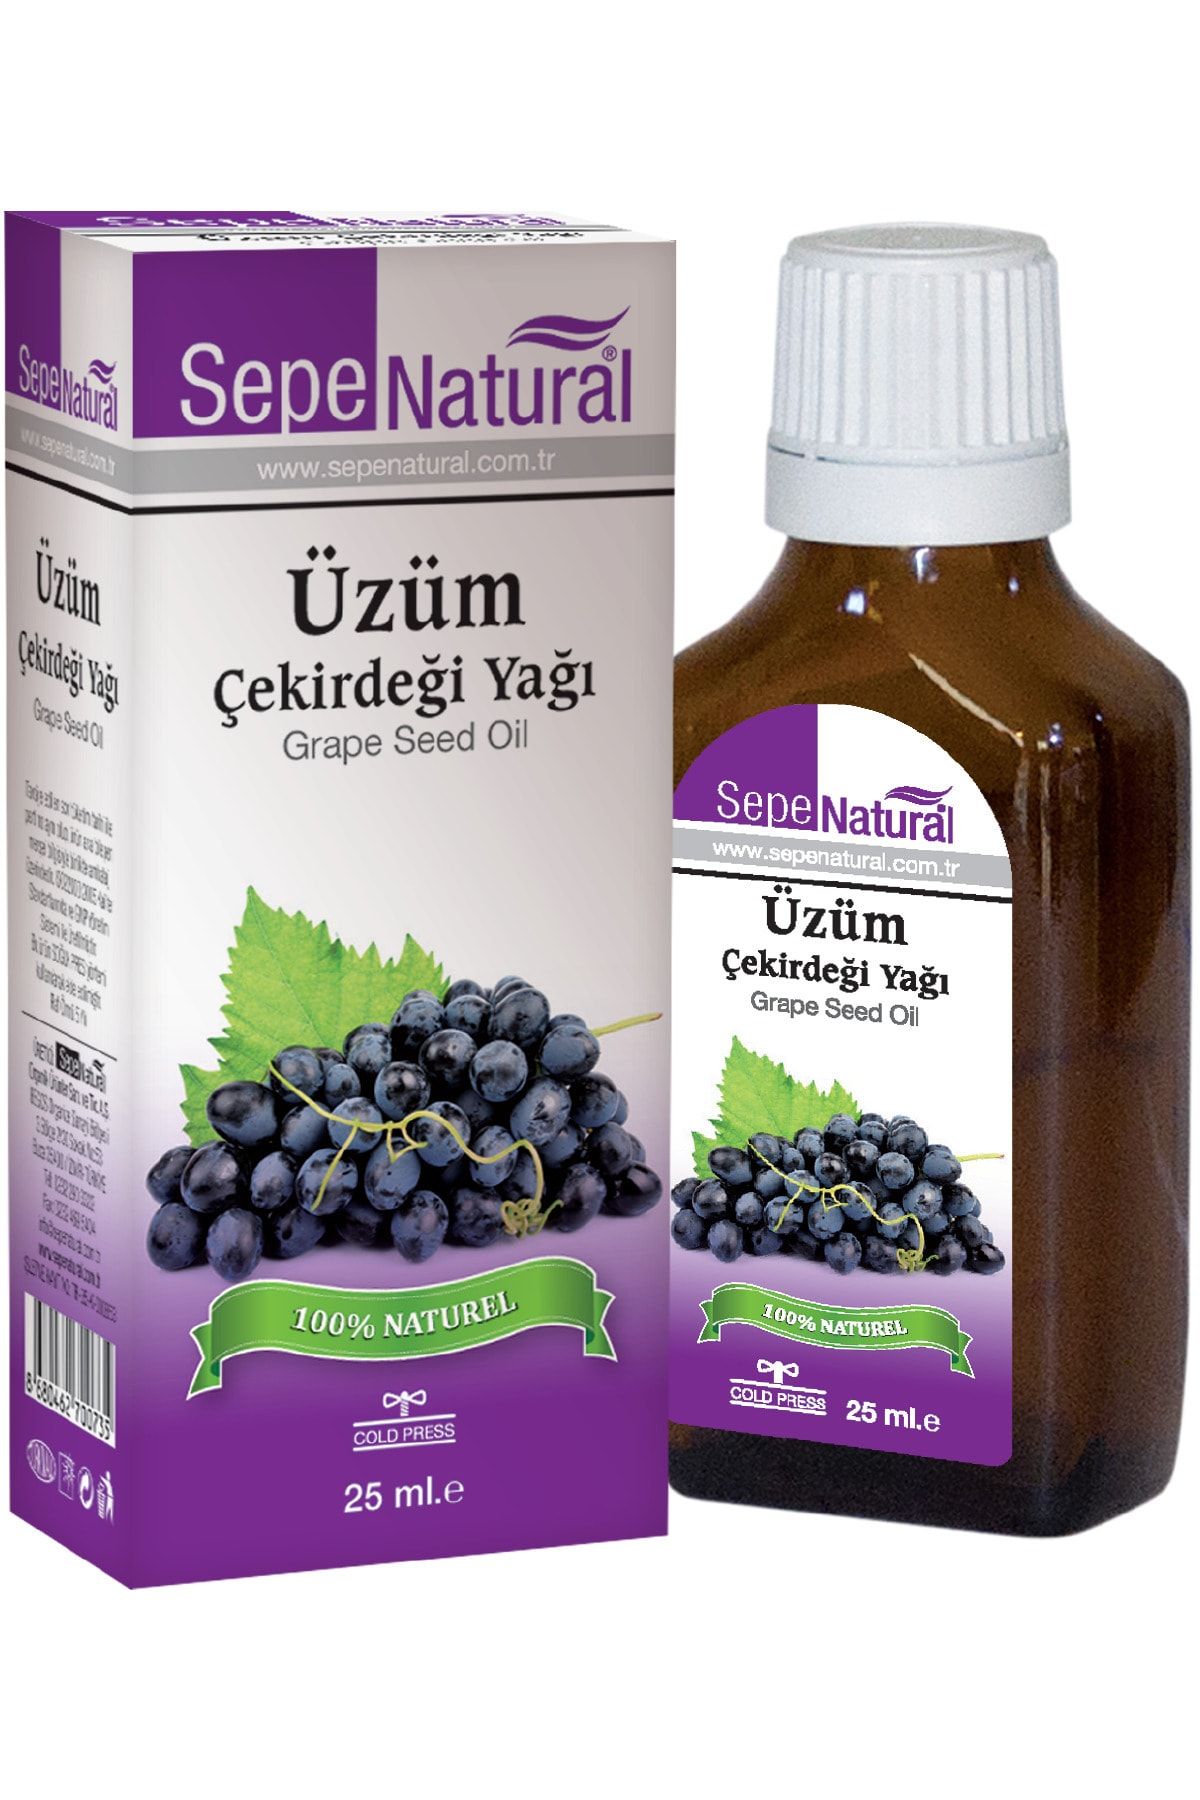 Sepe Natural Üzüm Çekirdeği Yağı 25 Ml Soğuk Sıkım Grape Seed Oil